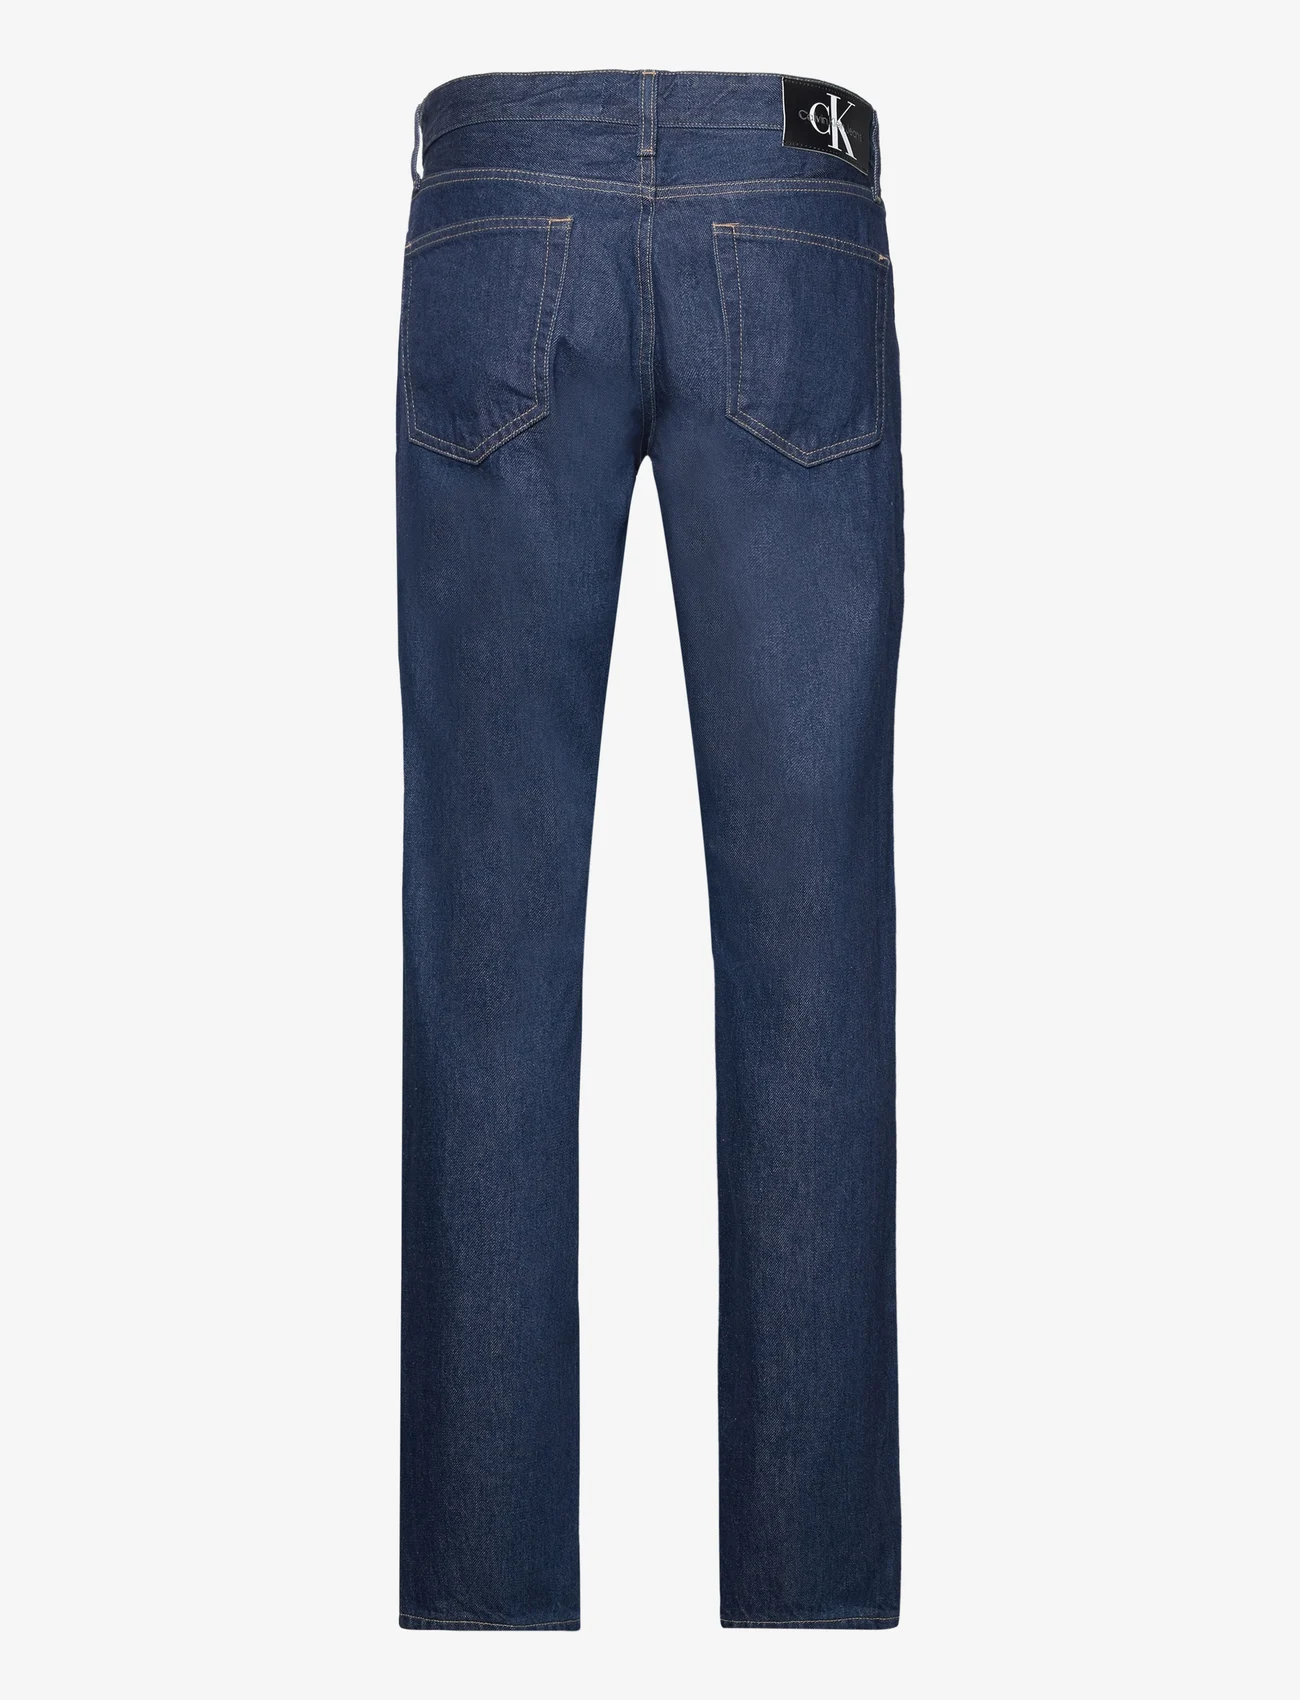 Calvin Klein Jeans - AUTHENTIC STRAIGHT - Įprasto kirpimo džinsai - denim rinse - 1